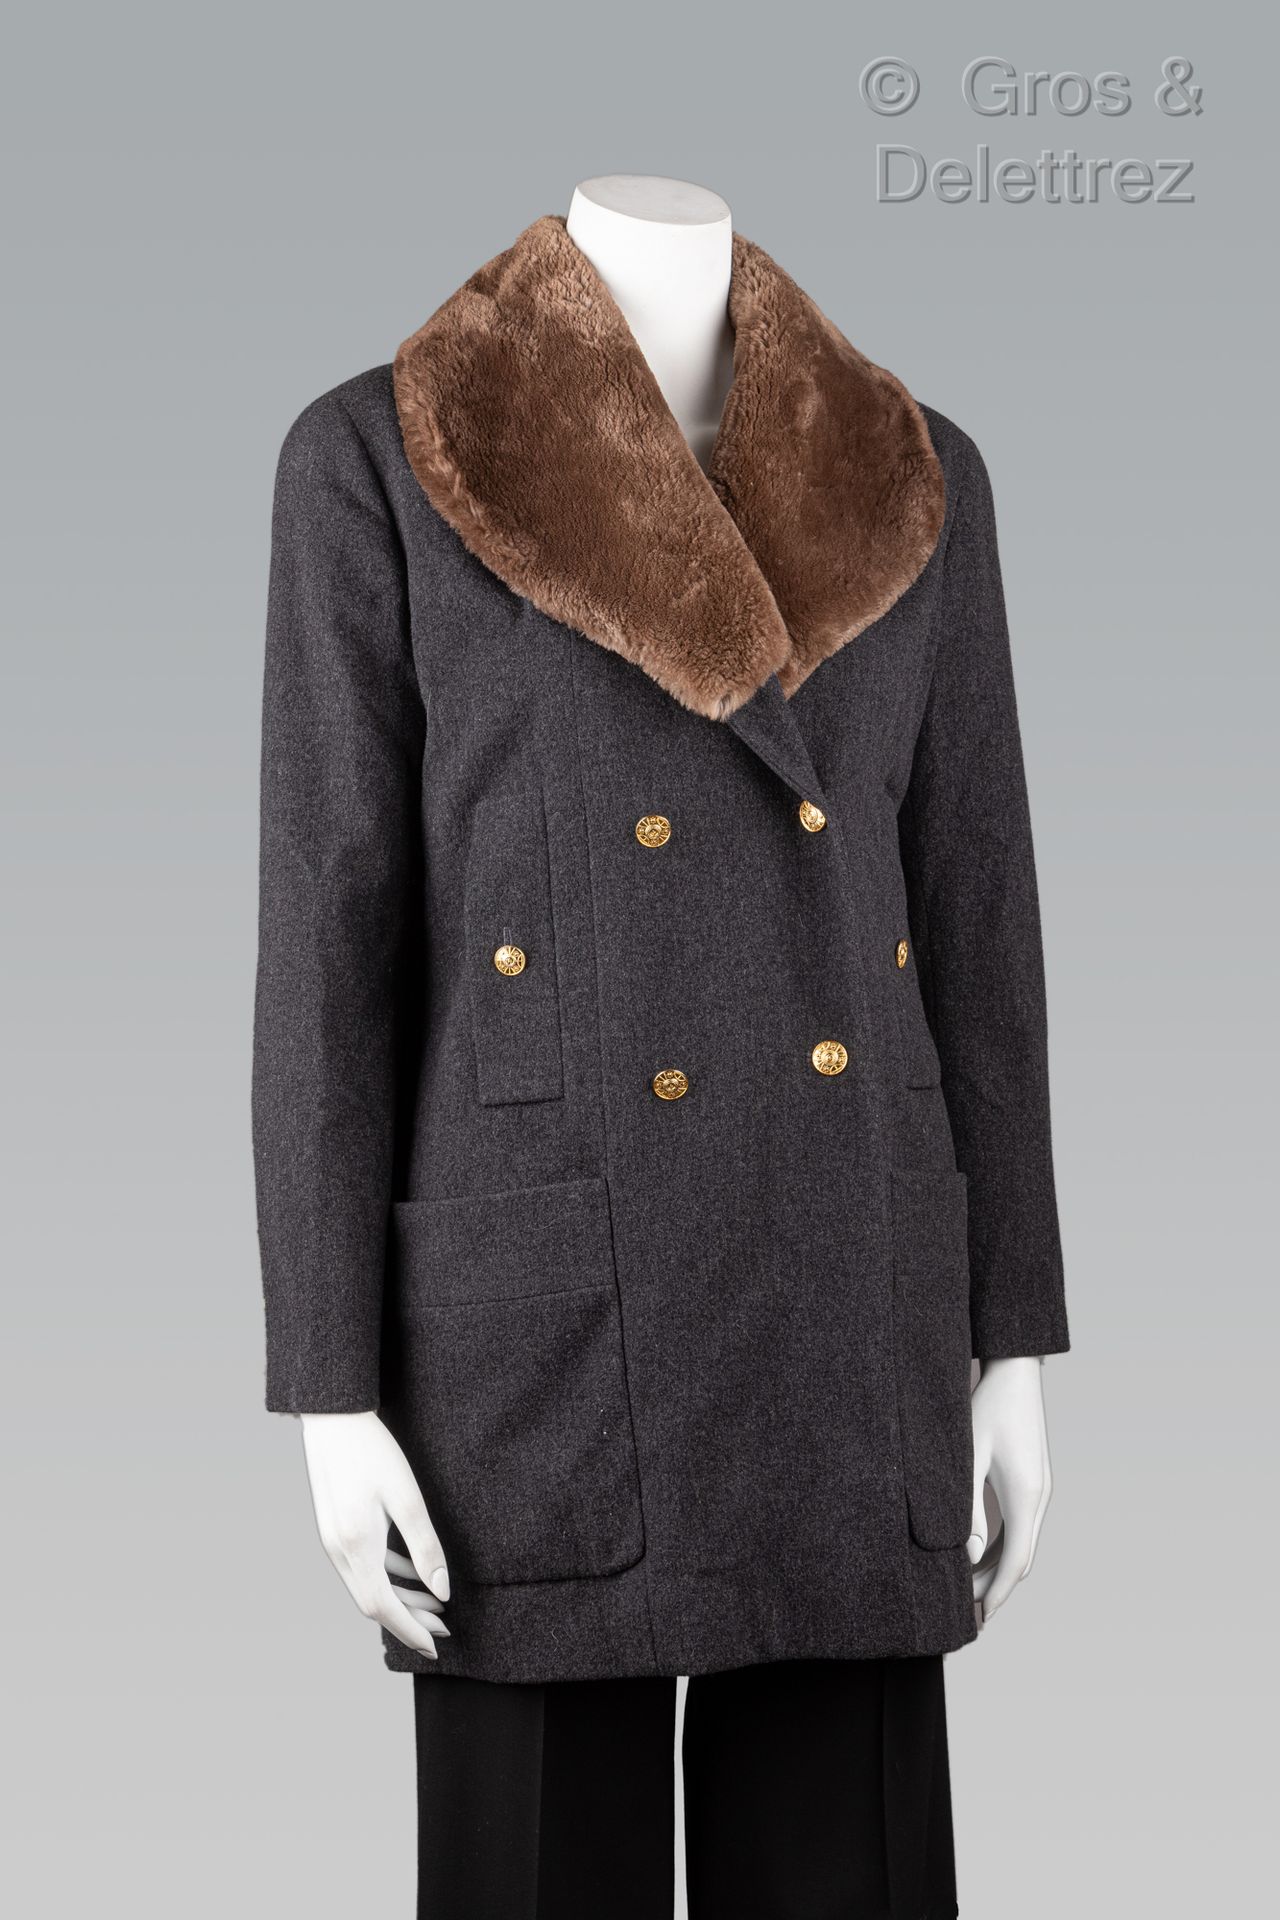 Null 卡尔-拉格斐的香奈儿专卖店

约1990年

炭灰色斑纹羊毛加拿大外套，榛子色海狸色披肩领，双排扣，六颗金色金属纽扣，两个贴袋，两个竖袋，长袖。黑色标&hellip;